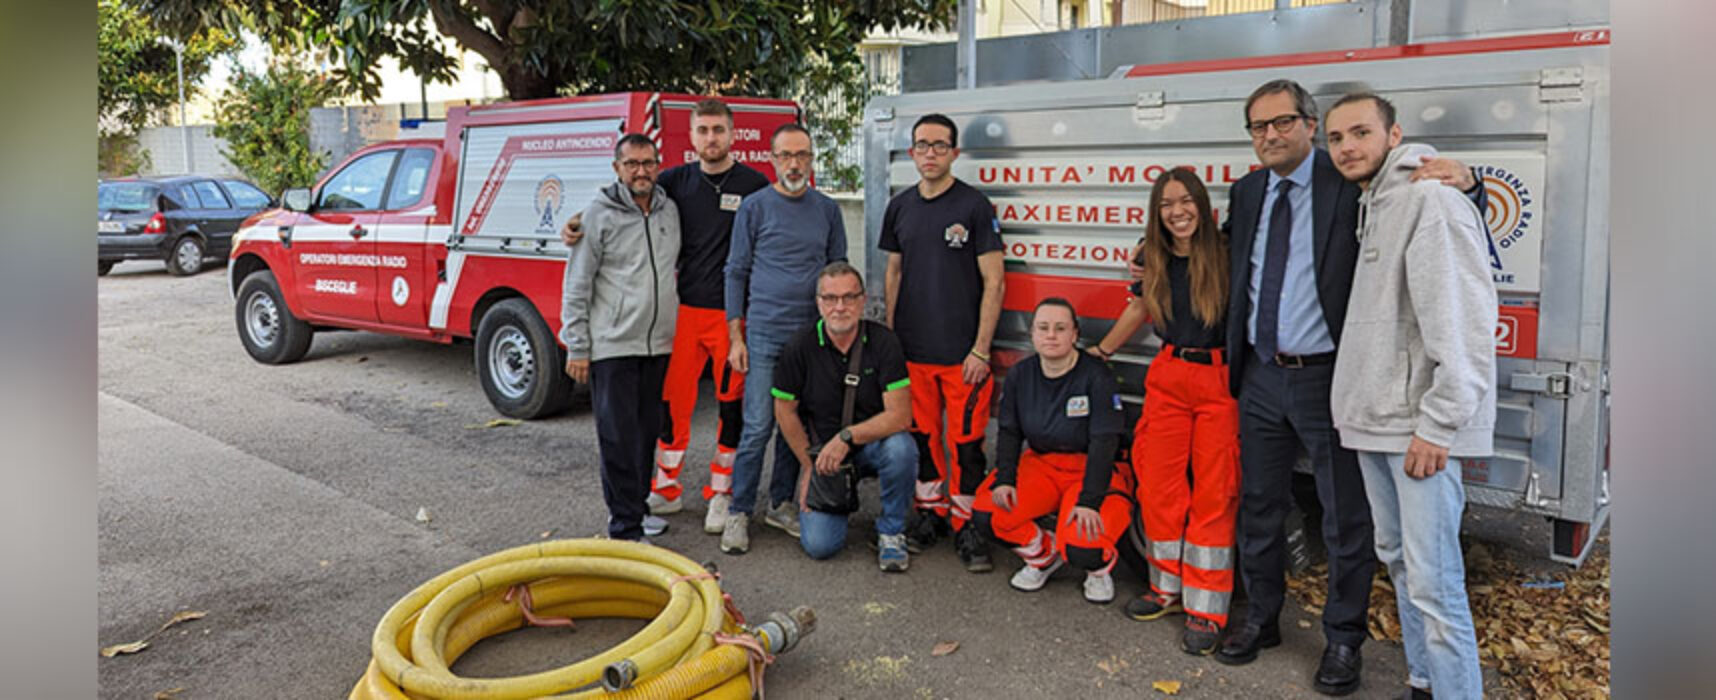 Oer Bisceglie in Toscana per aiutare le popolazioni colpite dall’alluvione